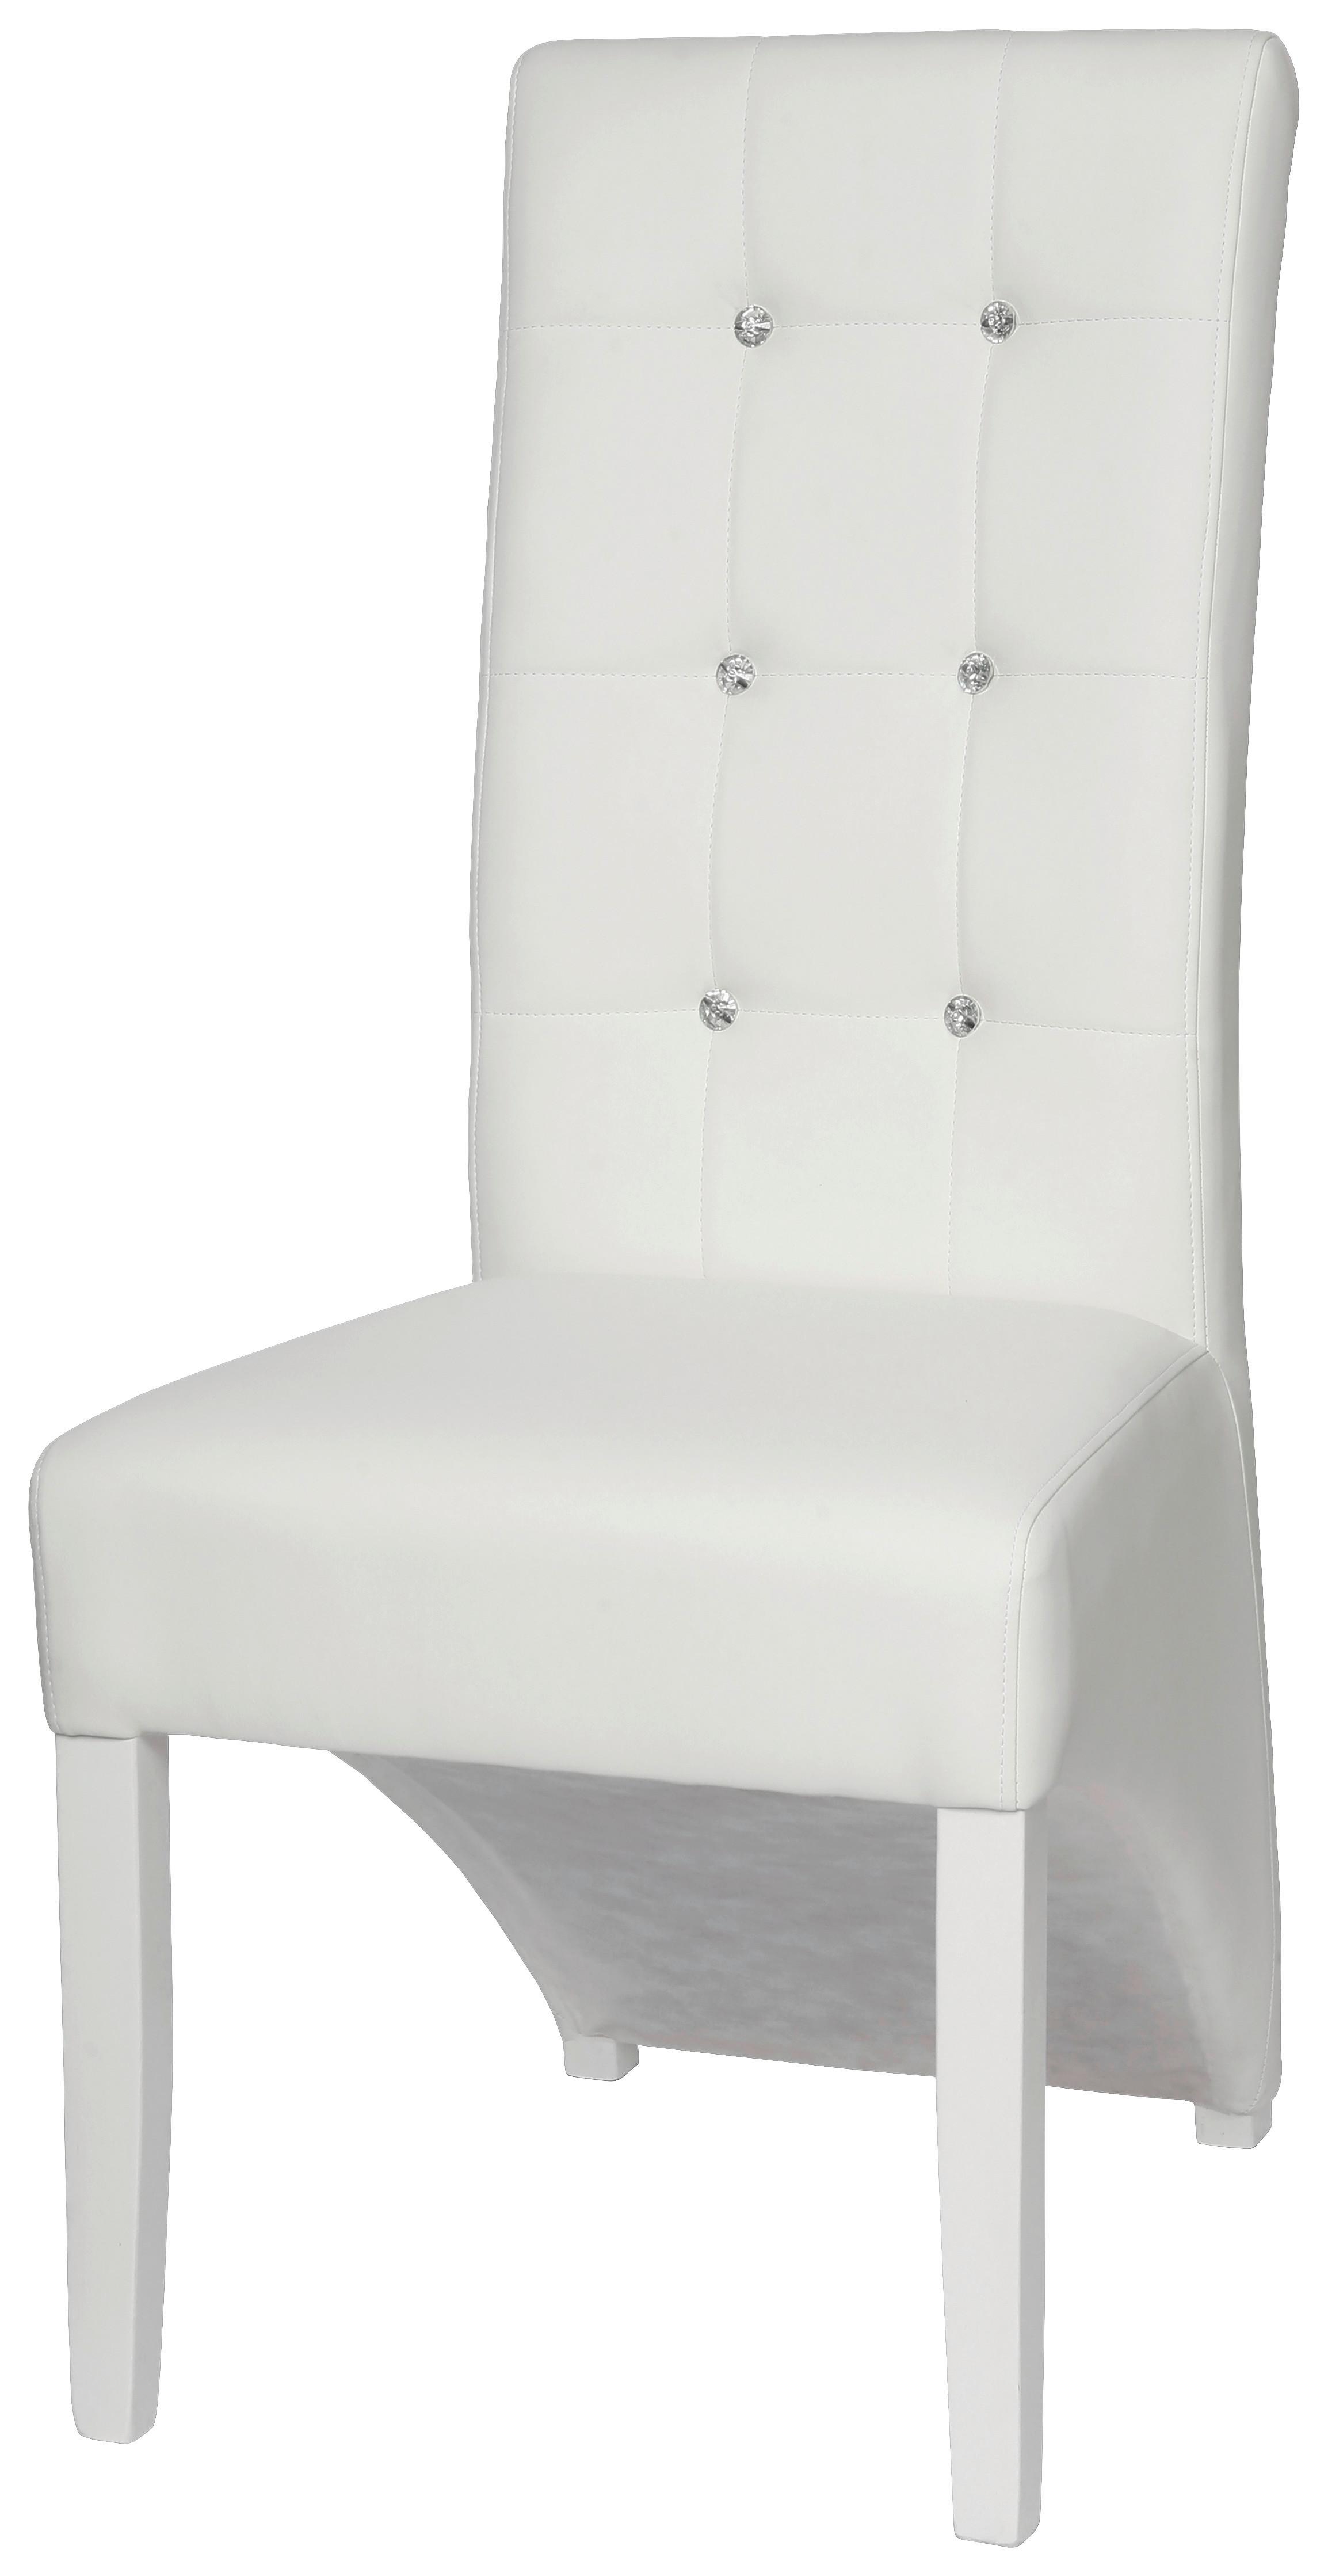 Židle Marilyn - bílá, Konvenční, dřevo (47/105/66cm)